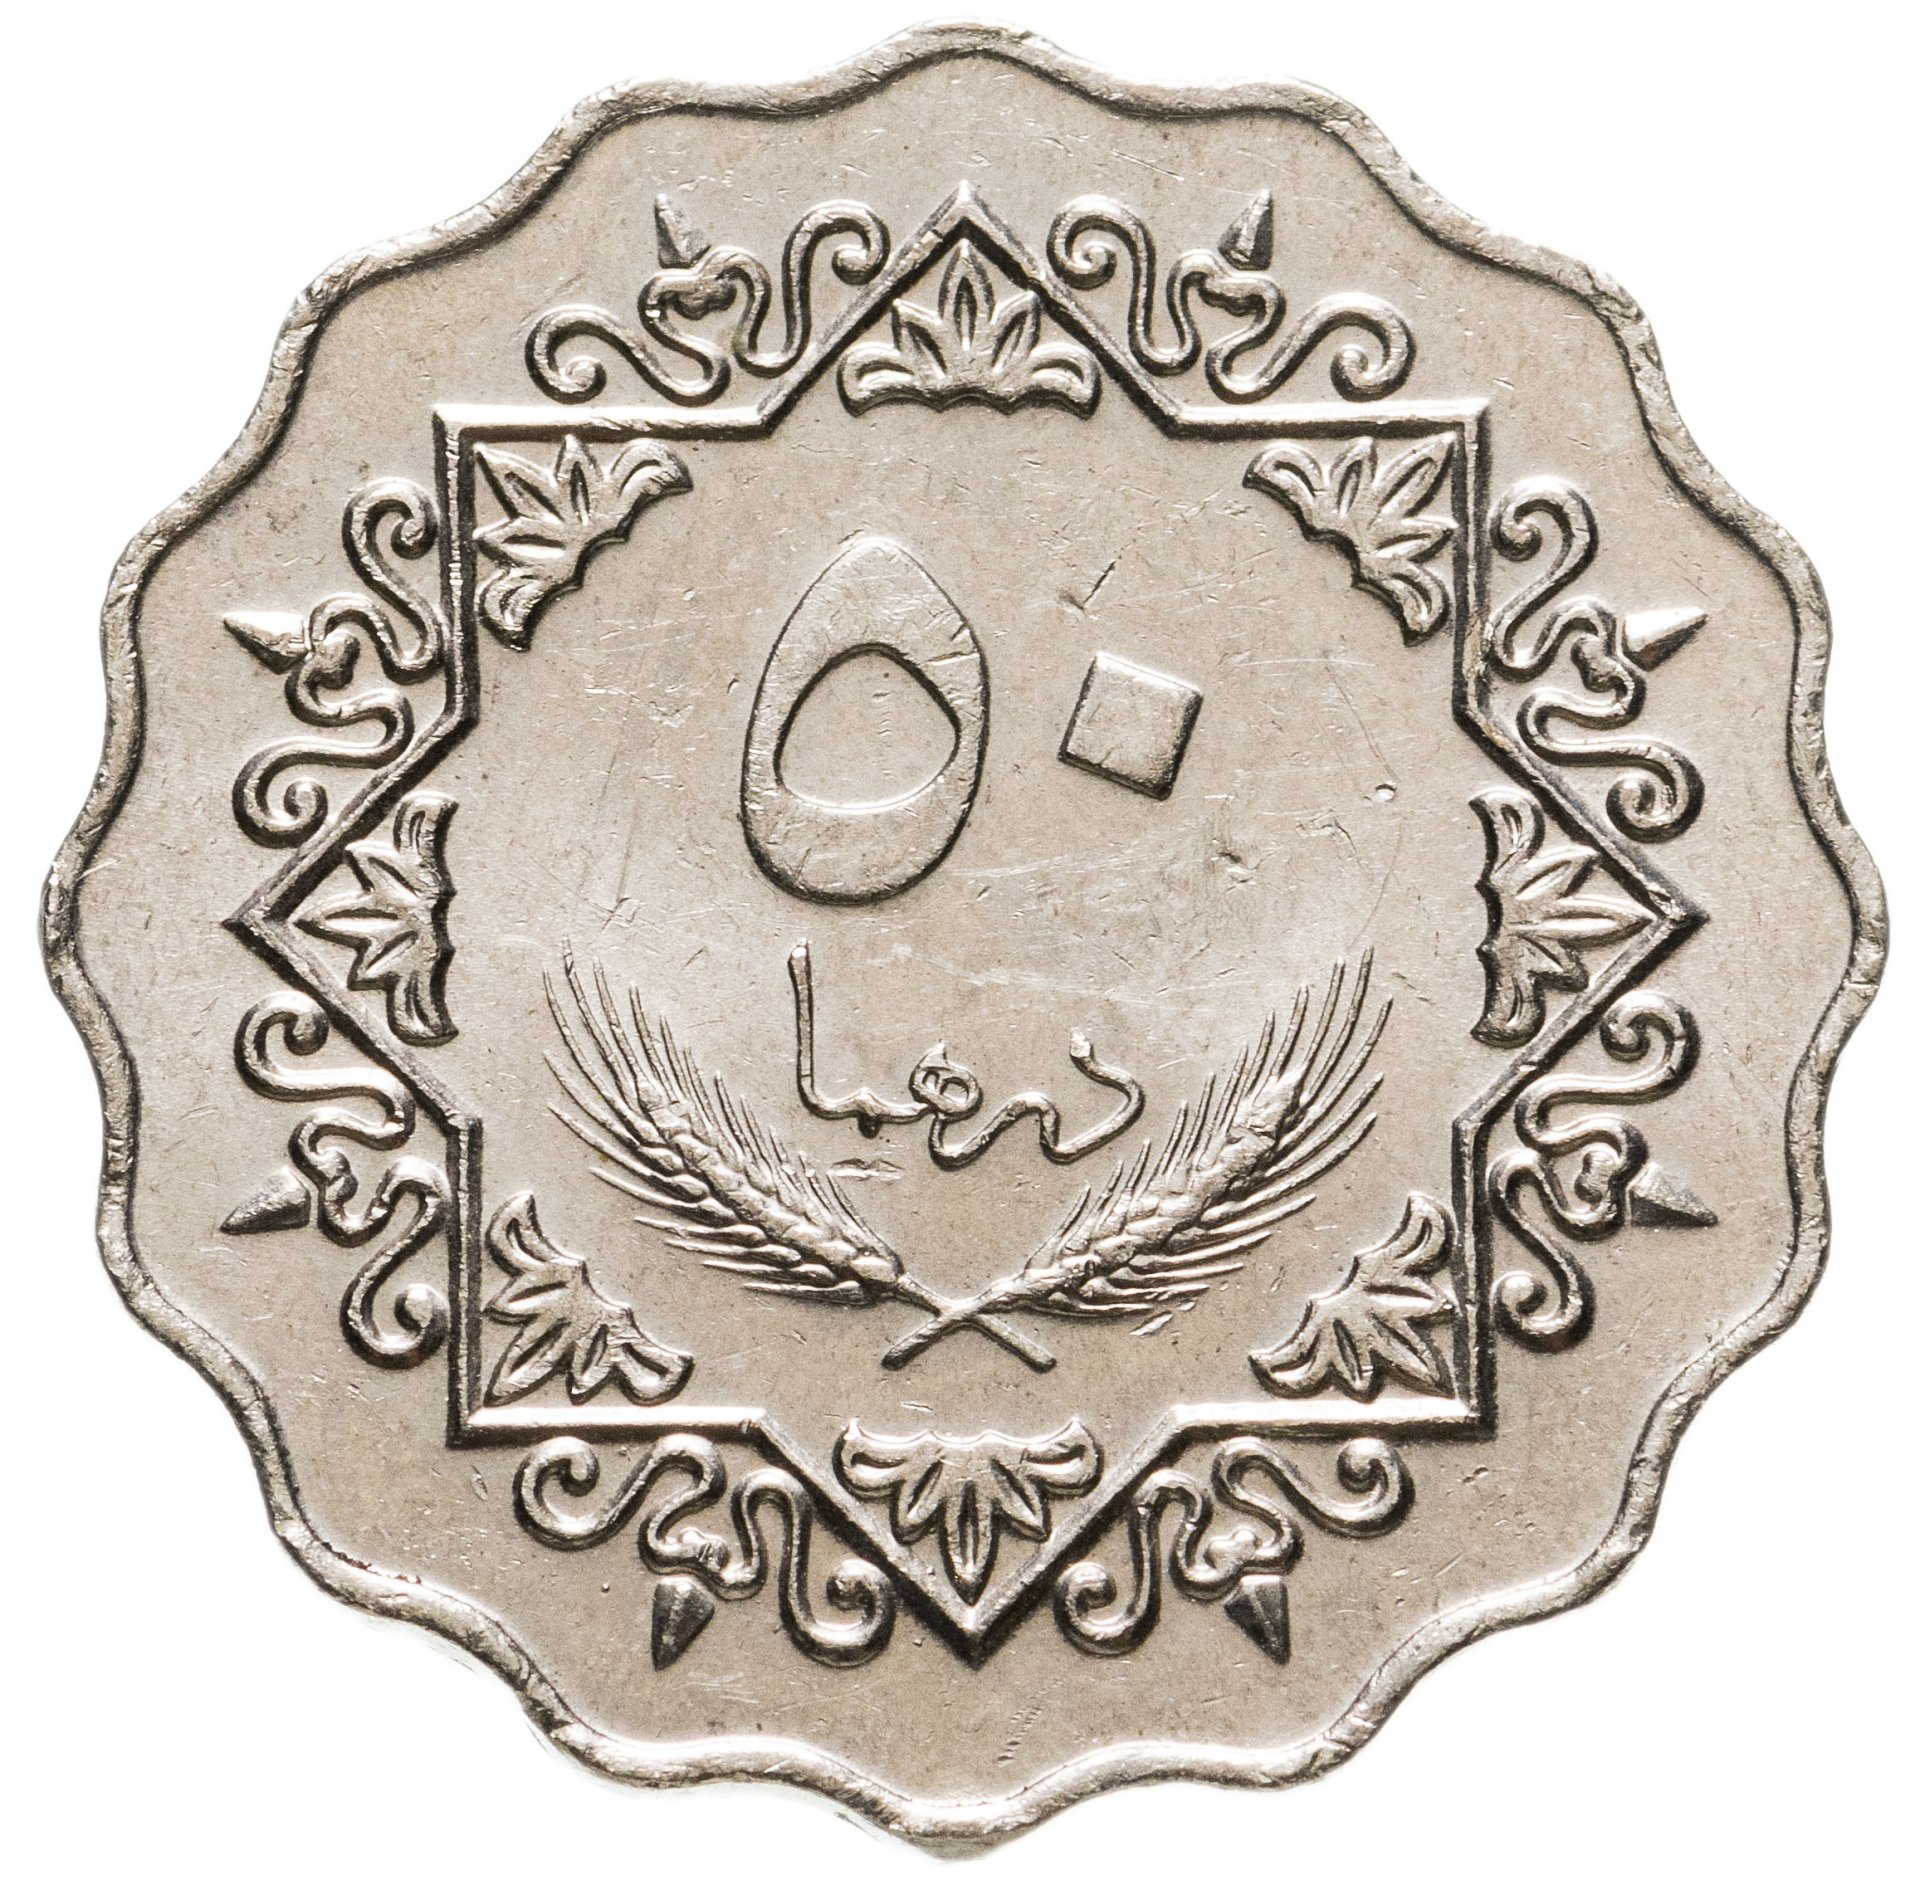 Ливия 50 дирхамов 1979. Монета с арабской вязью 50. Монеты ливийской Джамахирии. Старинные арабские монеты. 13 дирхам